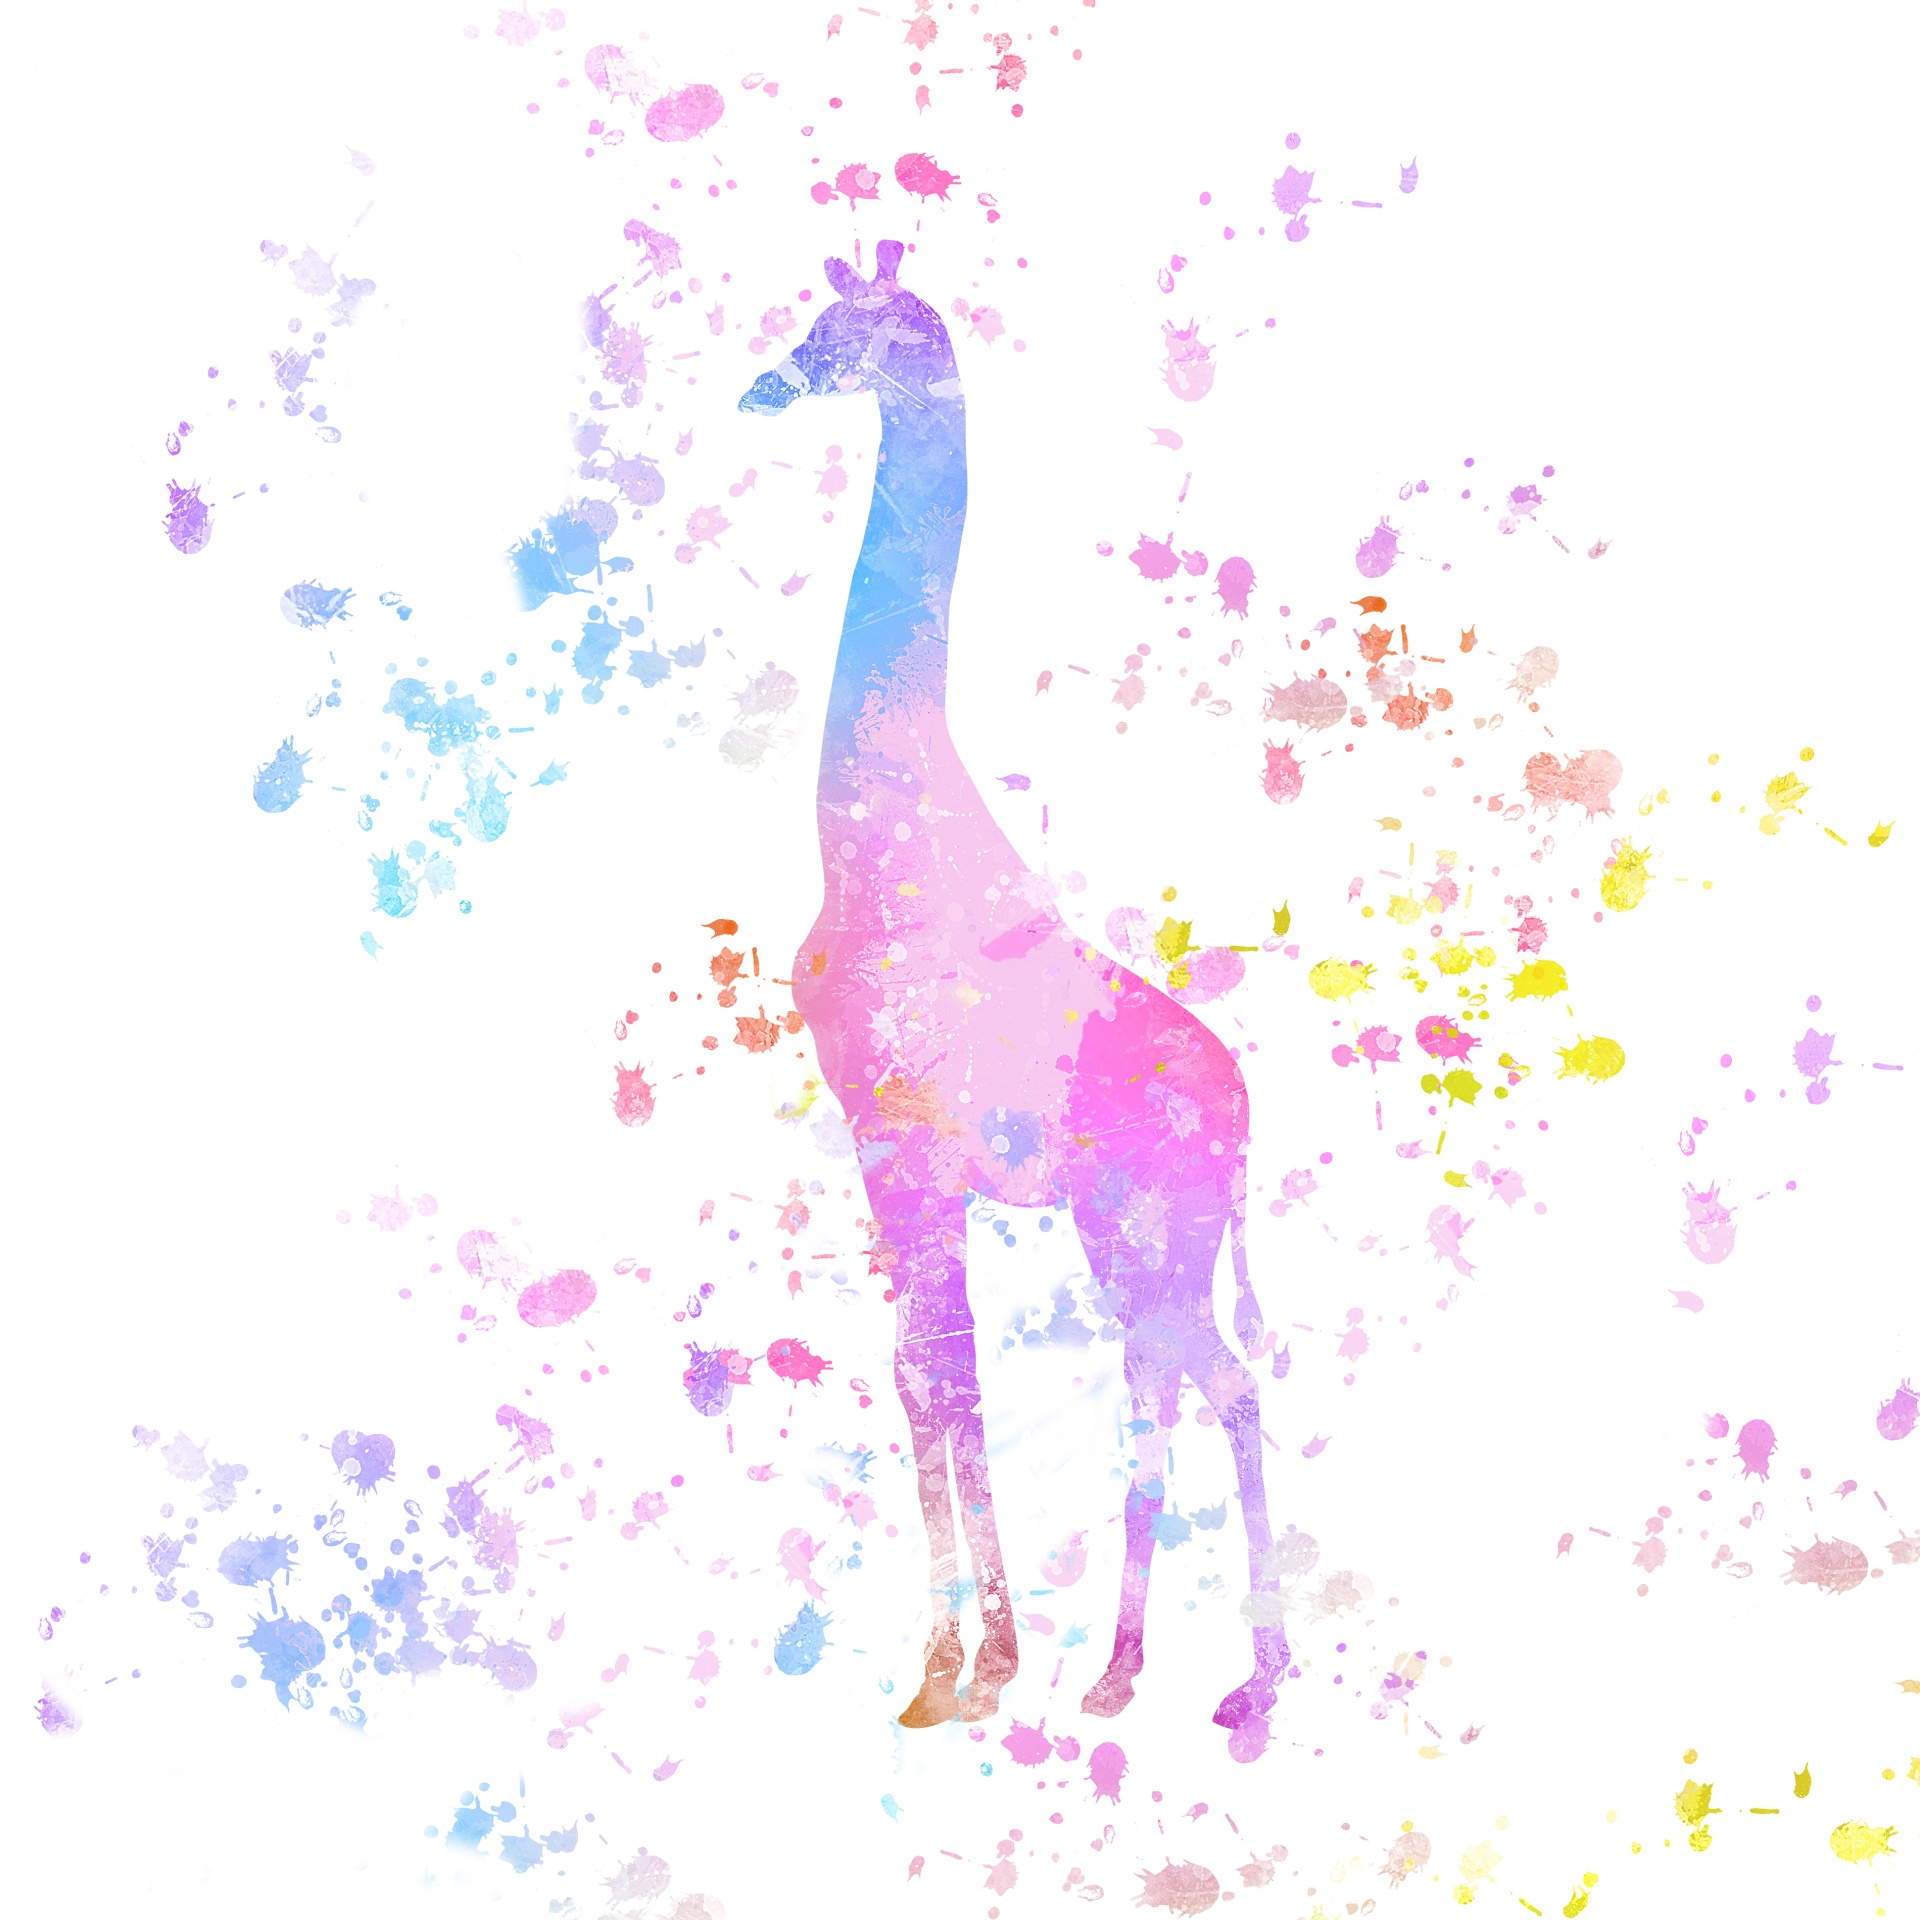 Giraffe Paint Splatter Colorful